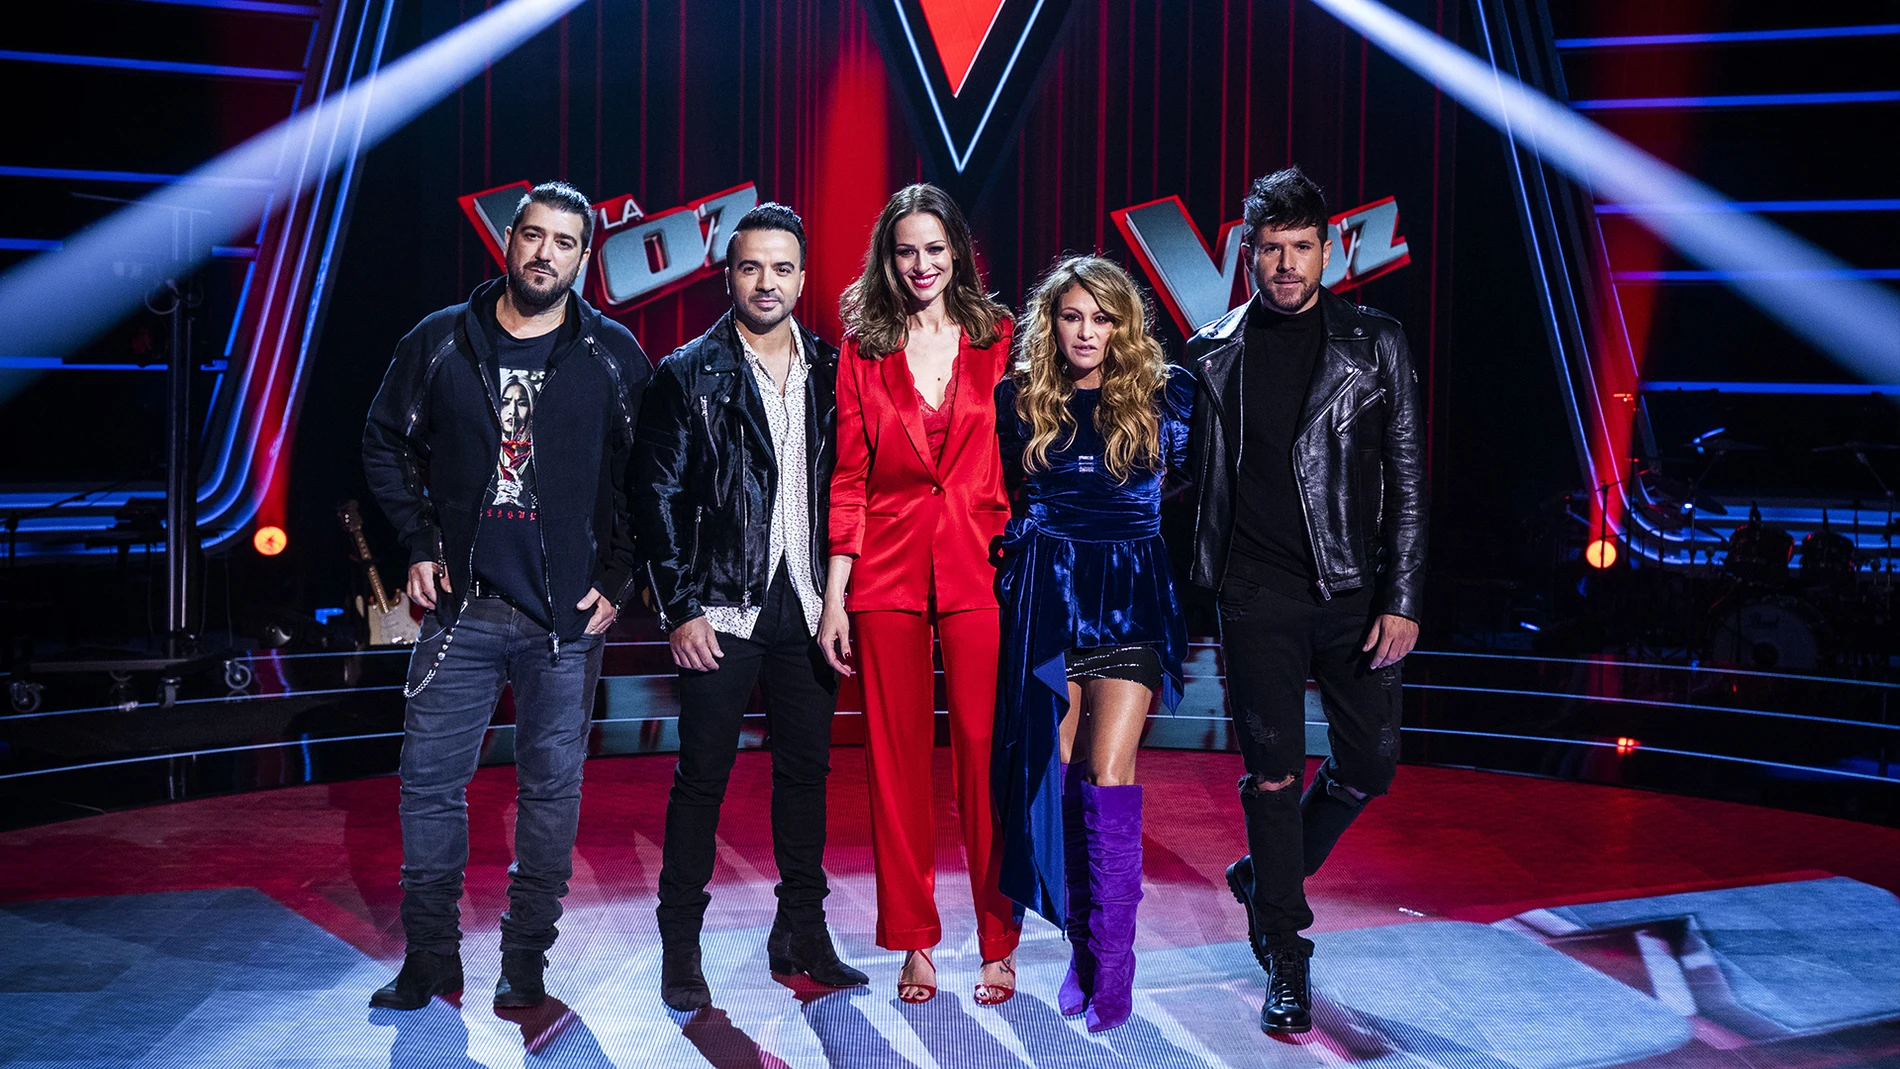 Todos los detalles que tienes que saber del estreno de 'La Voz' en Antena 3 